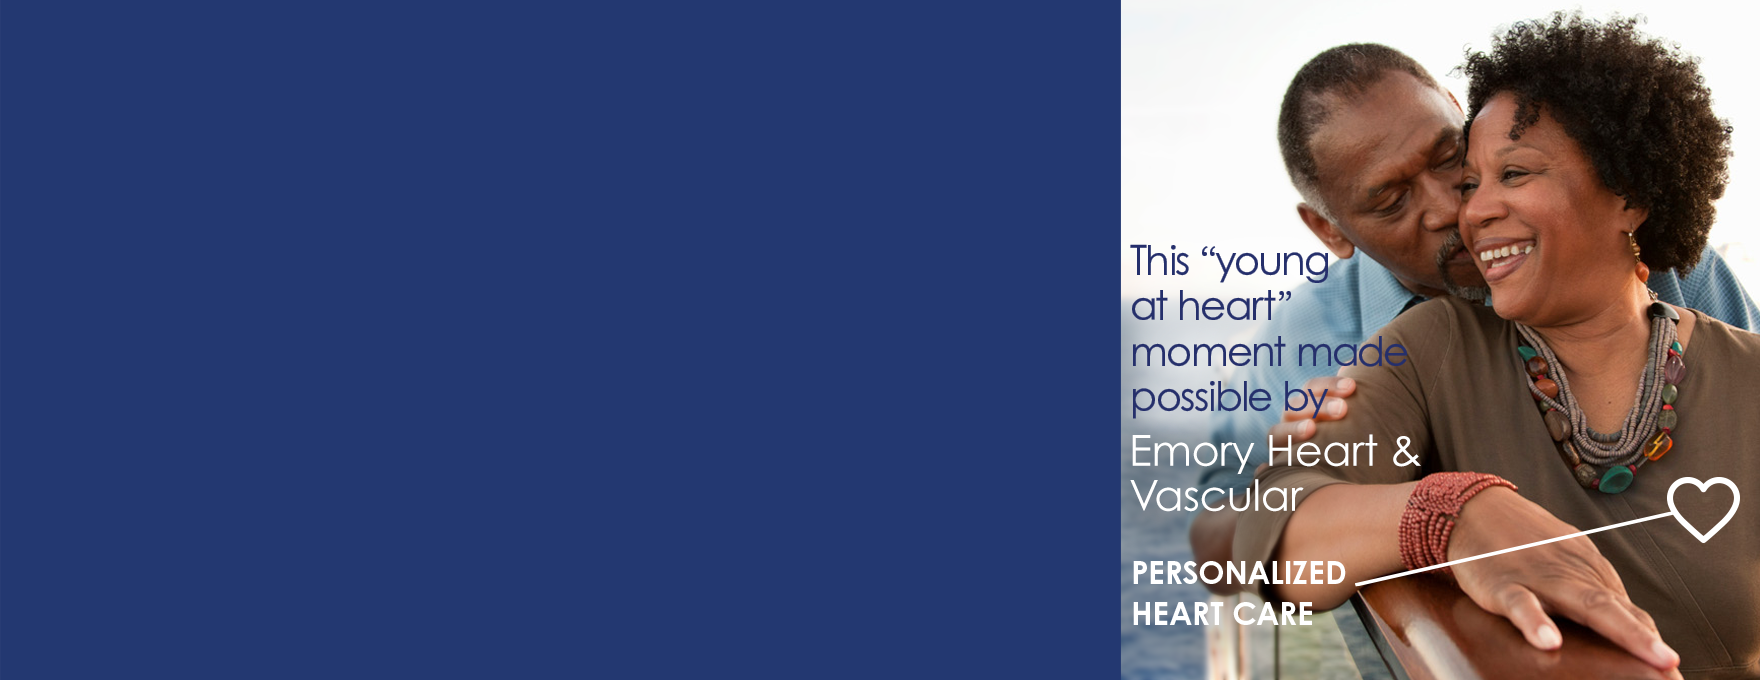 EHC Homepage Heart & Vascular Banner